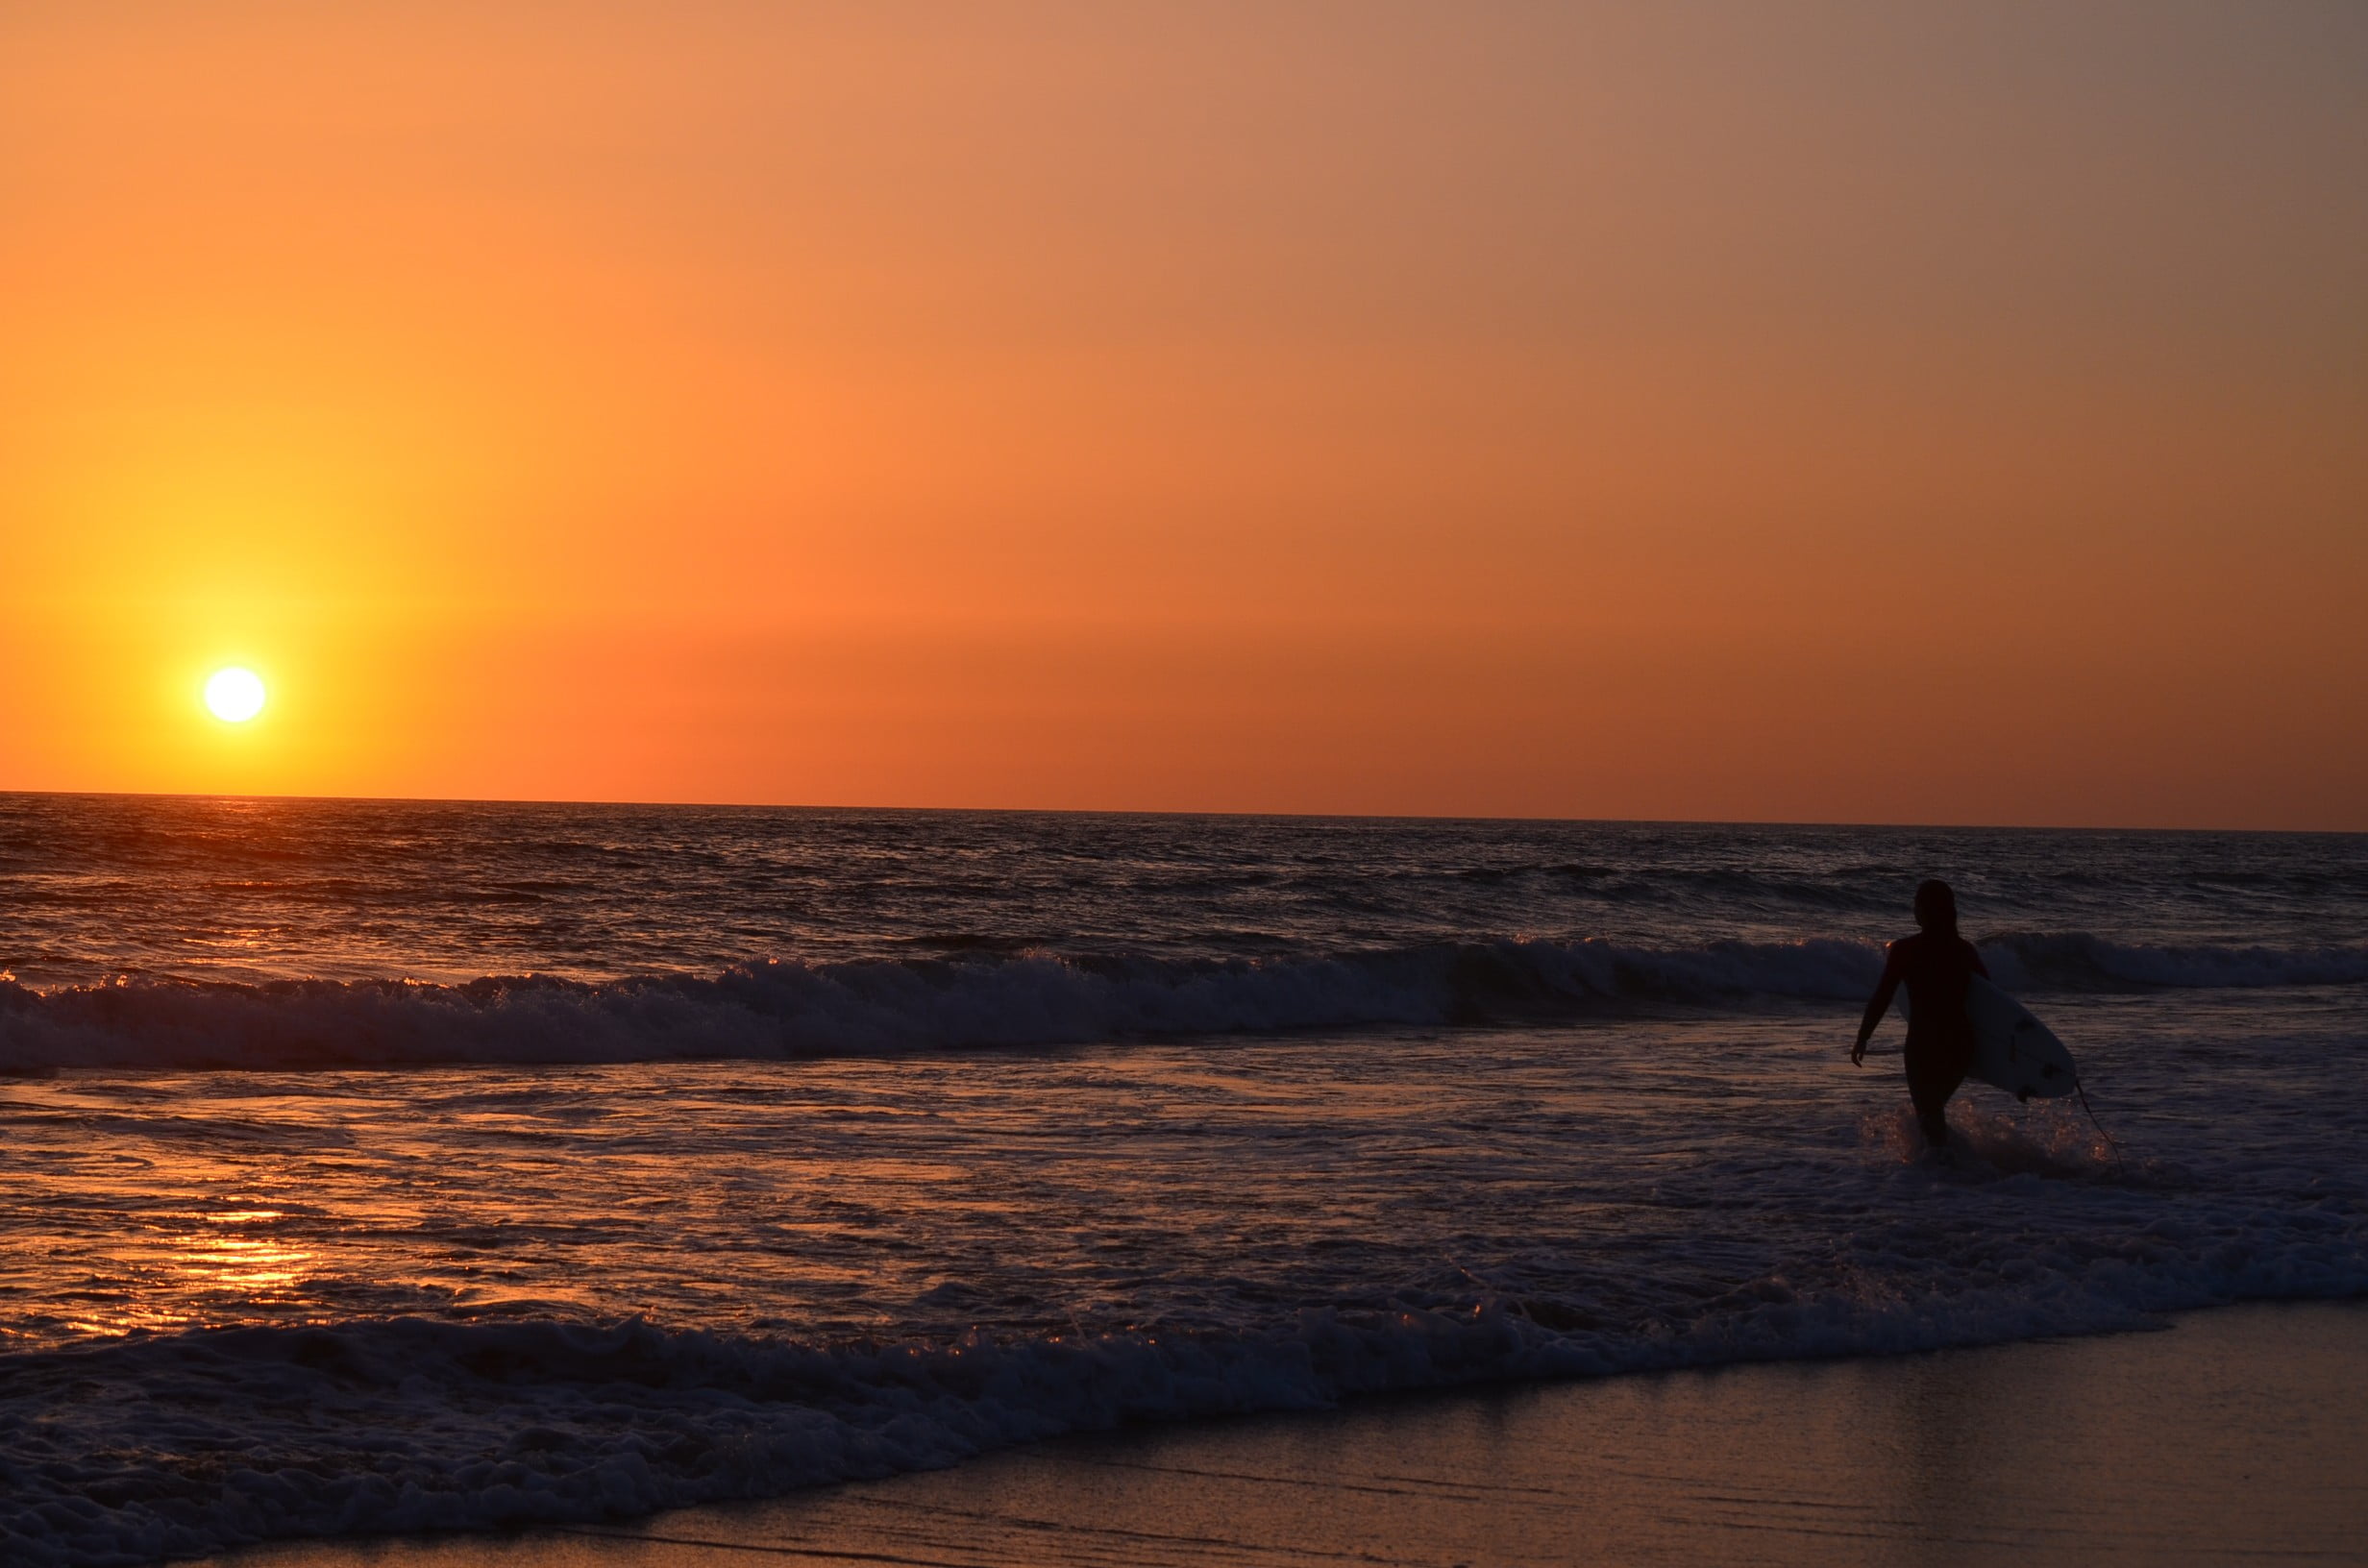 seashore and sun, surfing, sunset, waves, Ozean